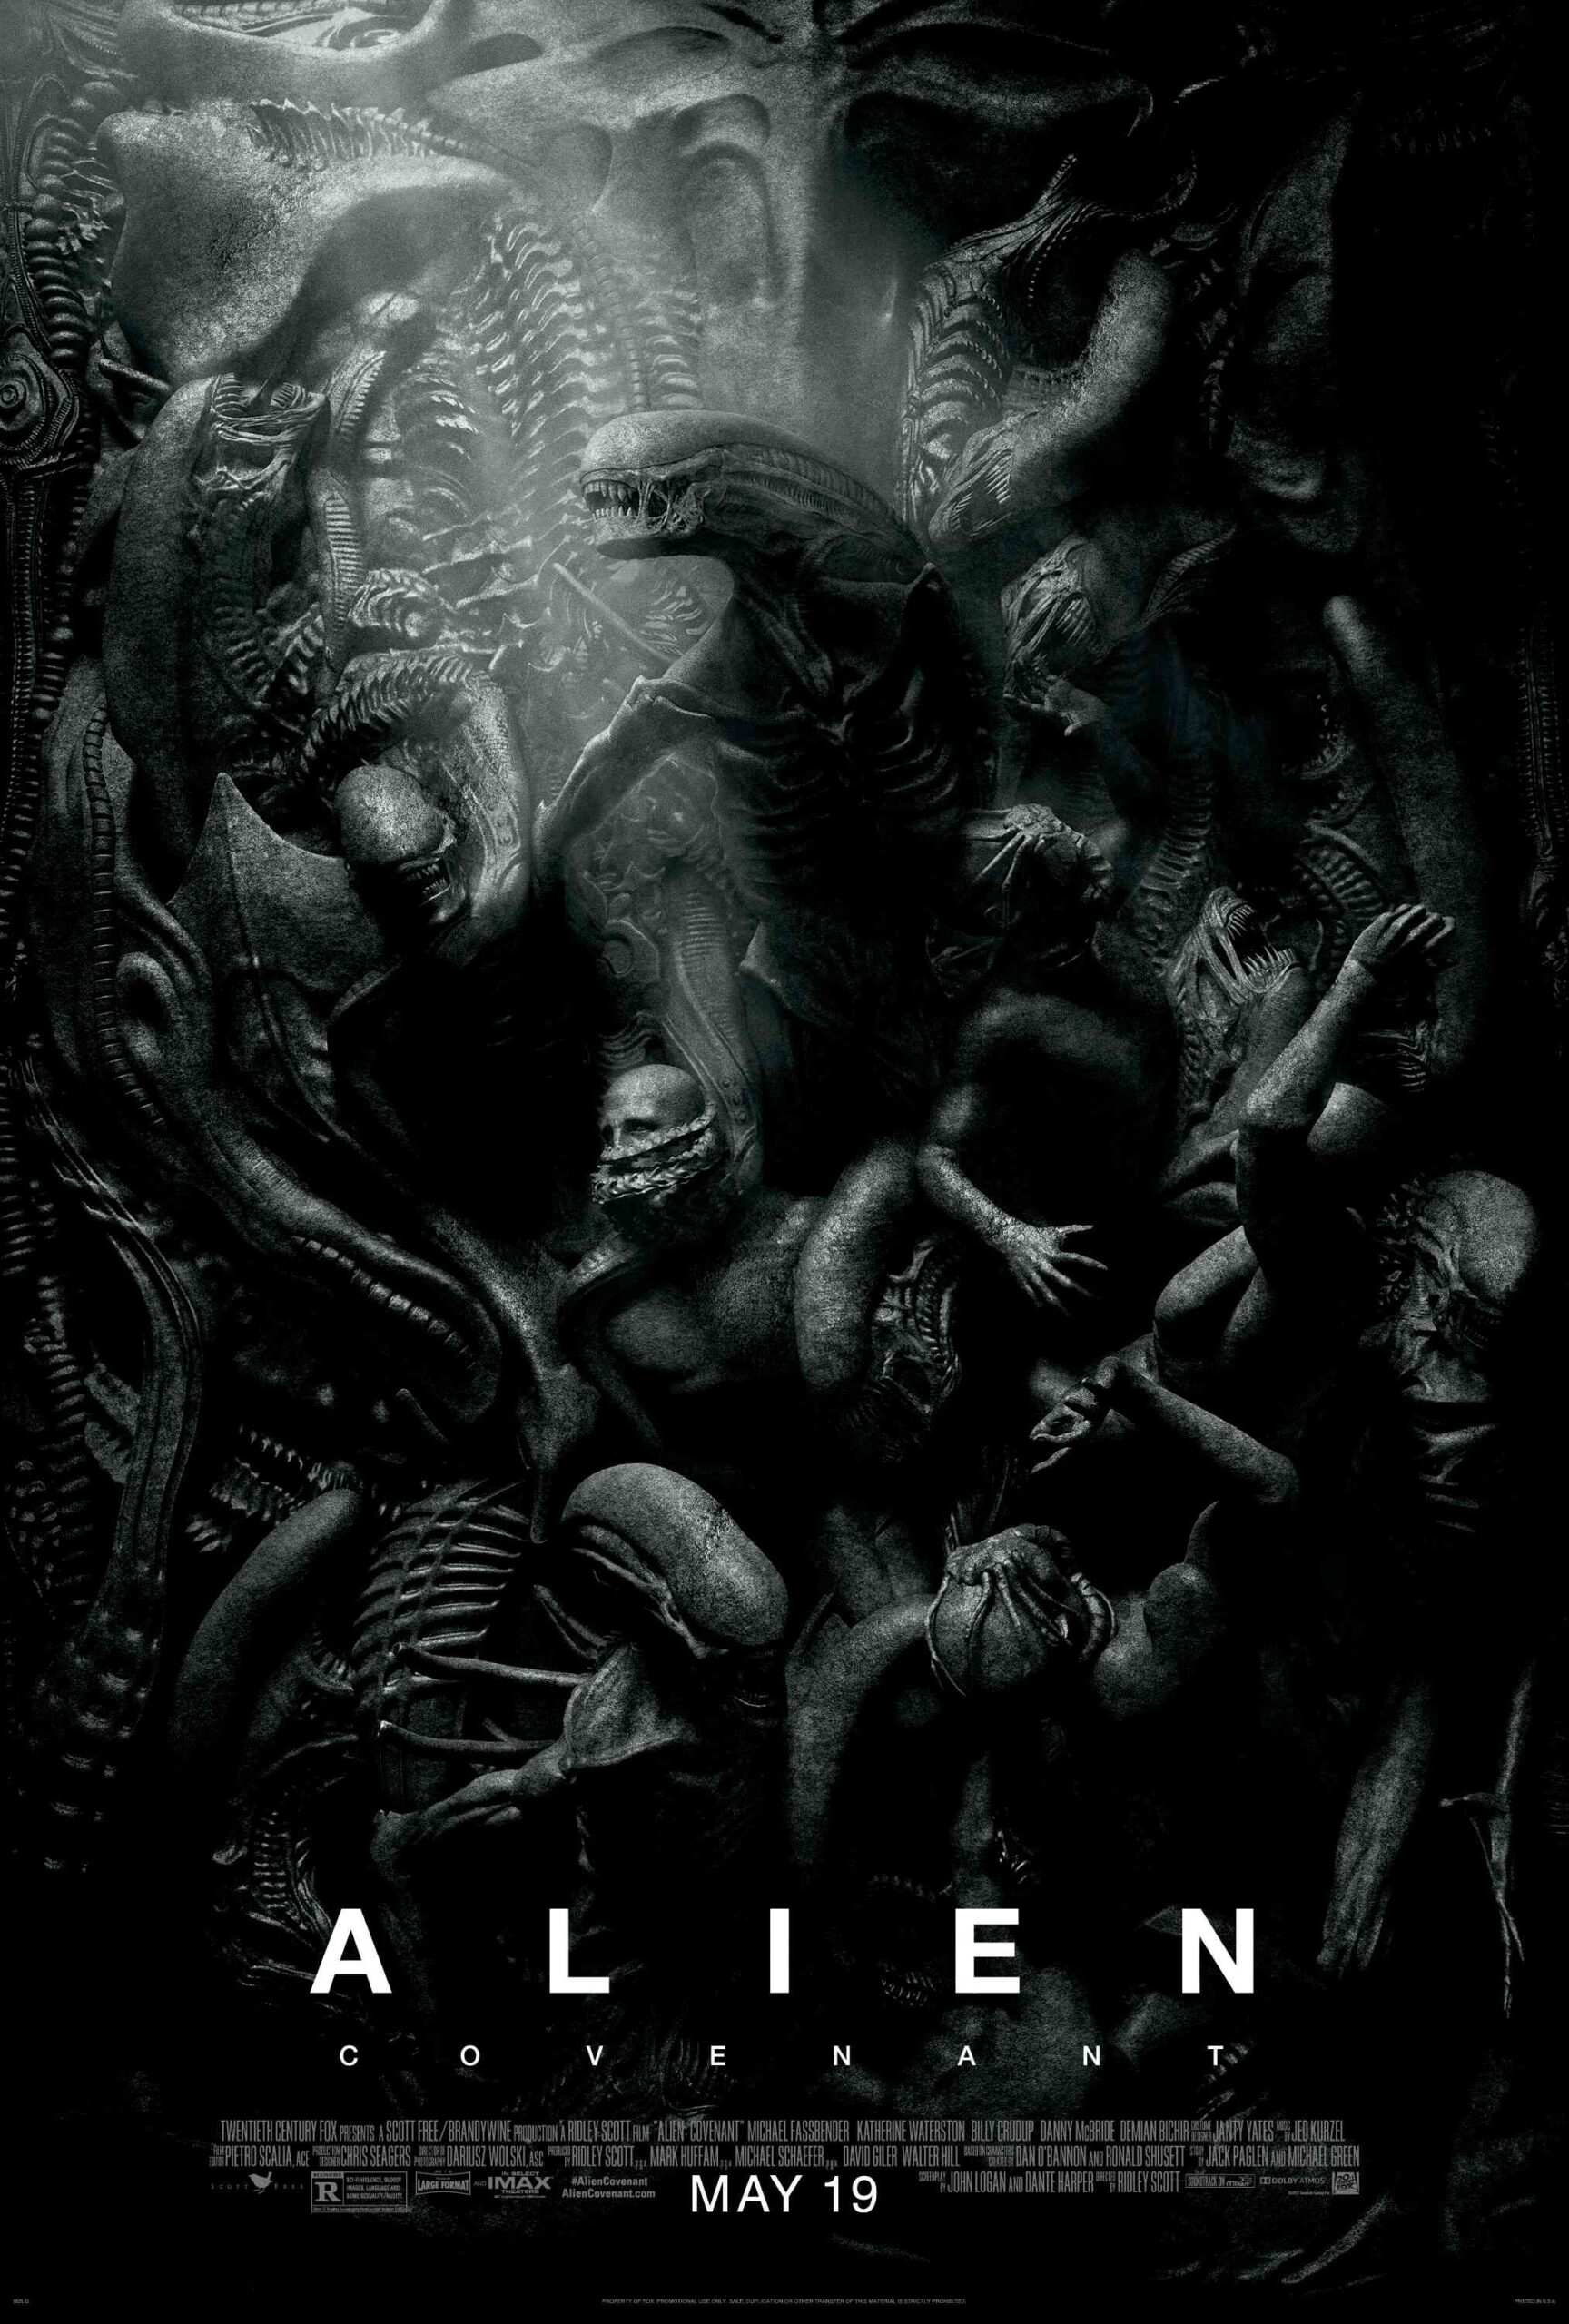 FULL MOVIE: Alien: Covenant (2017)